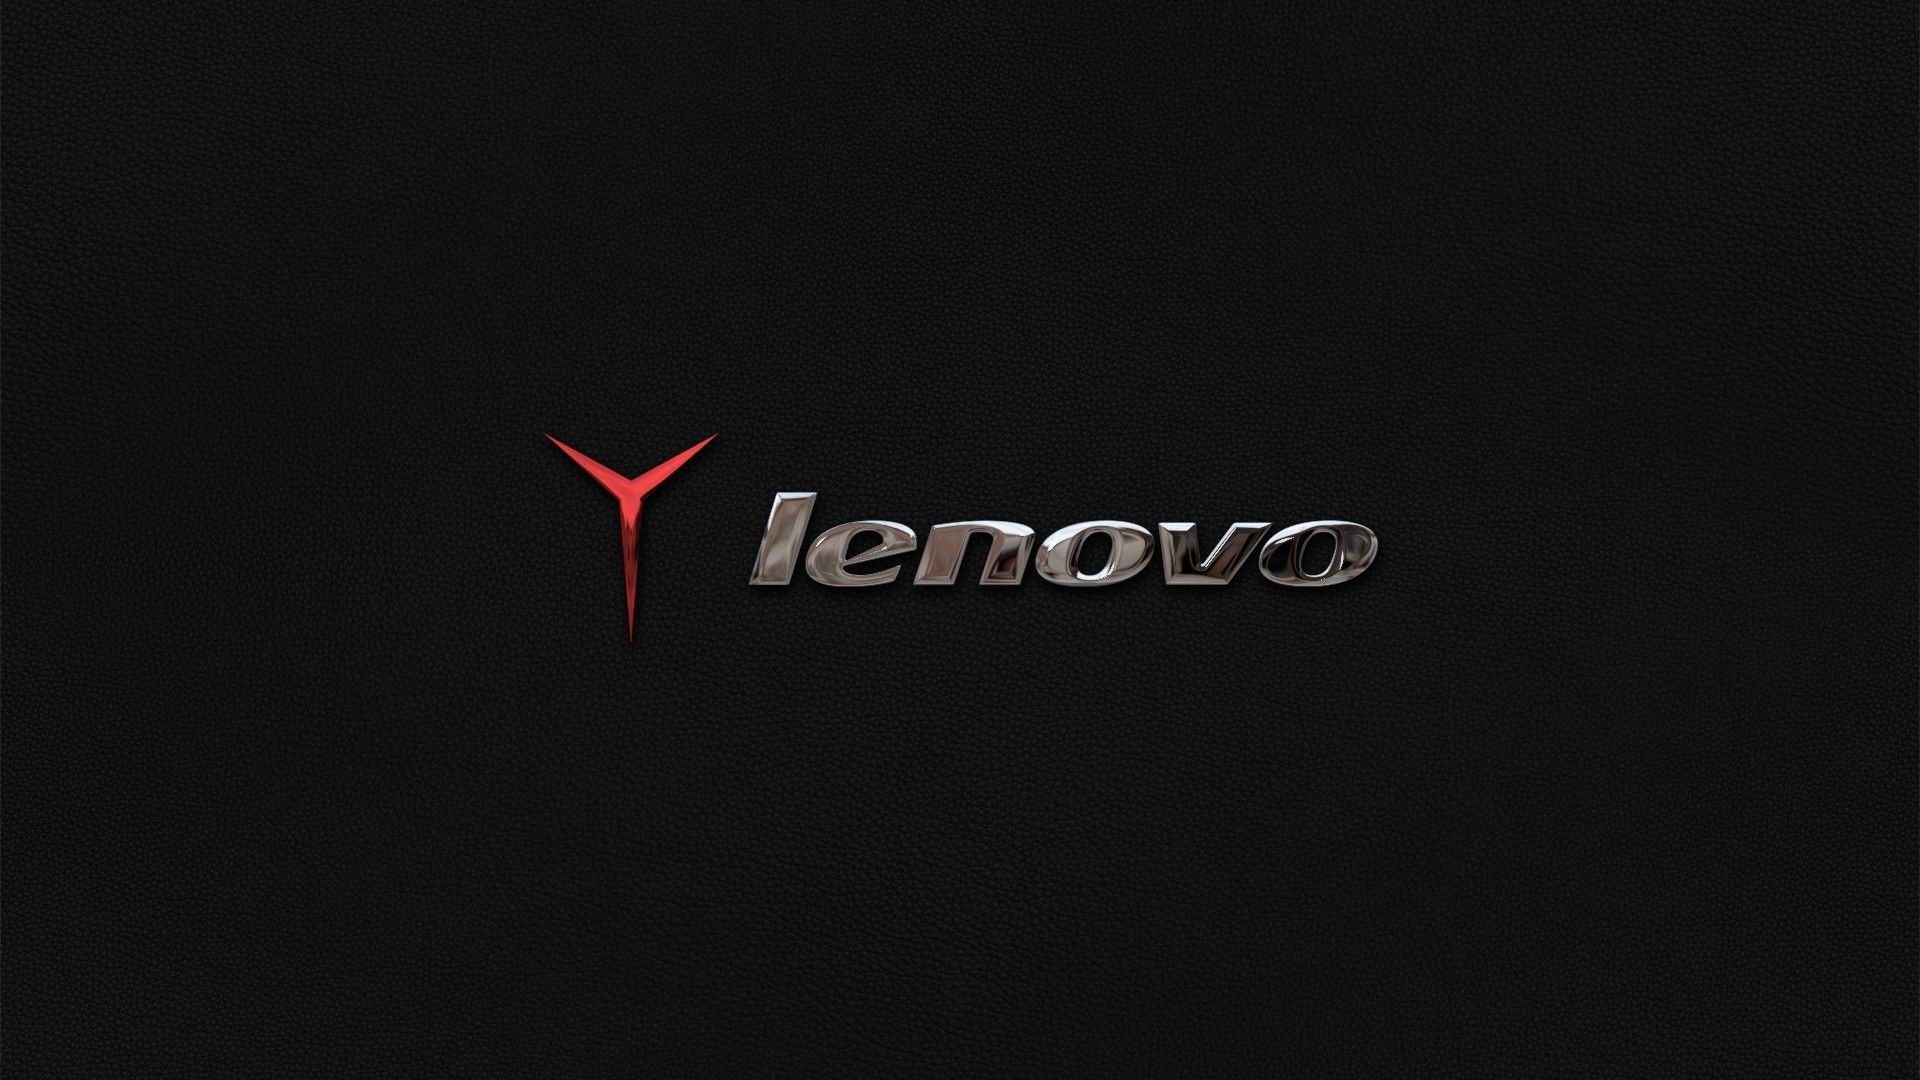 Lenovo Yoga Wallpapers